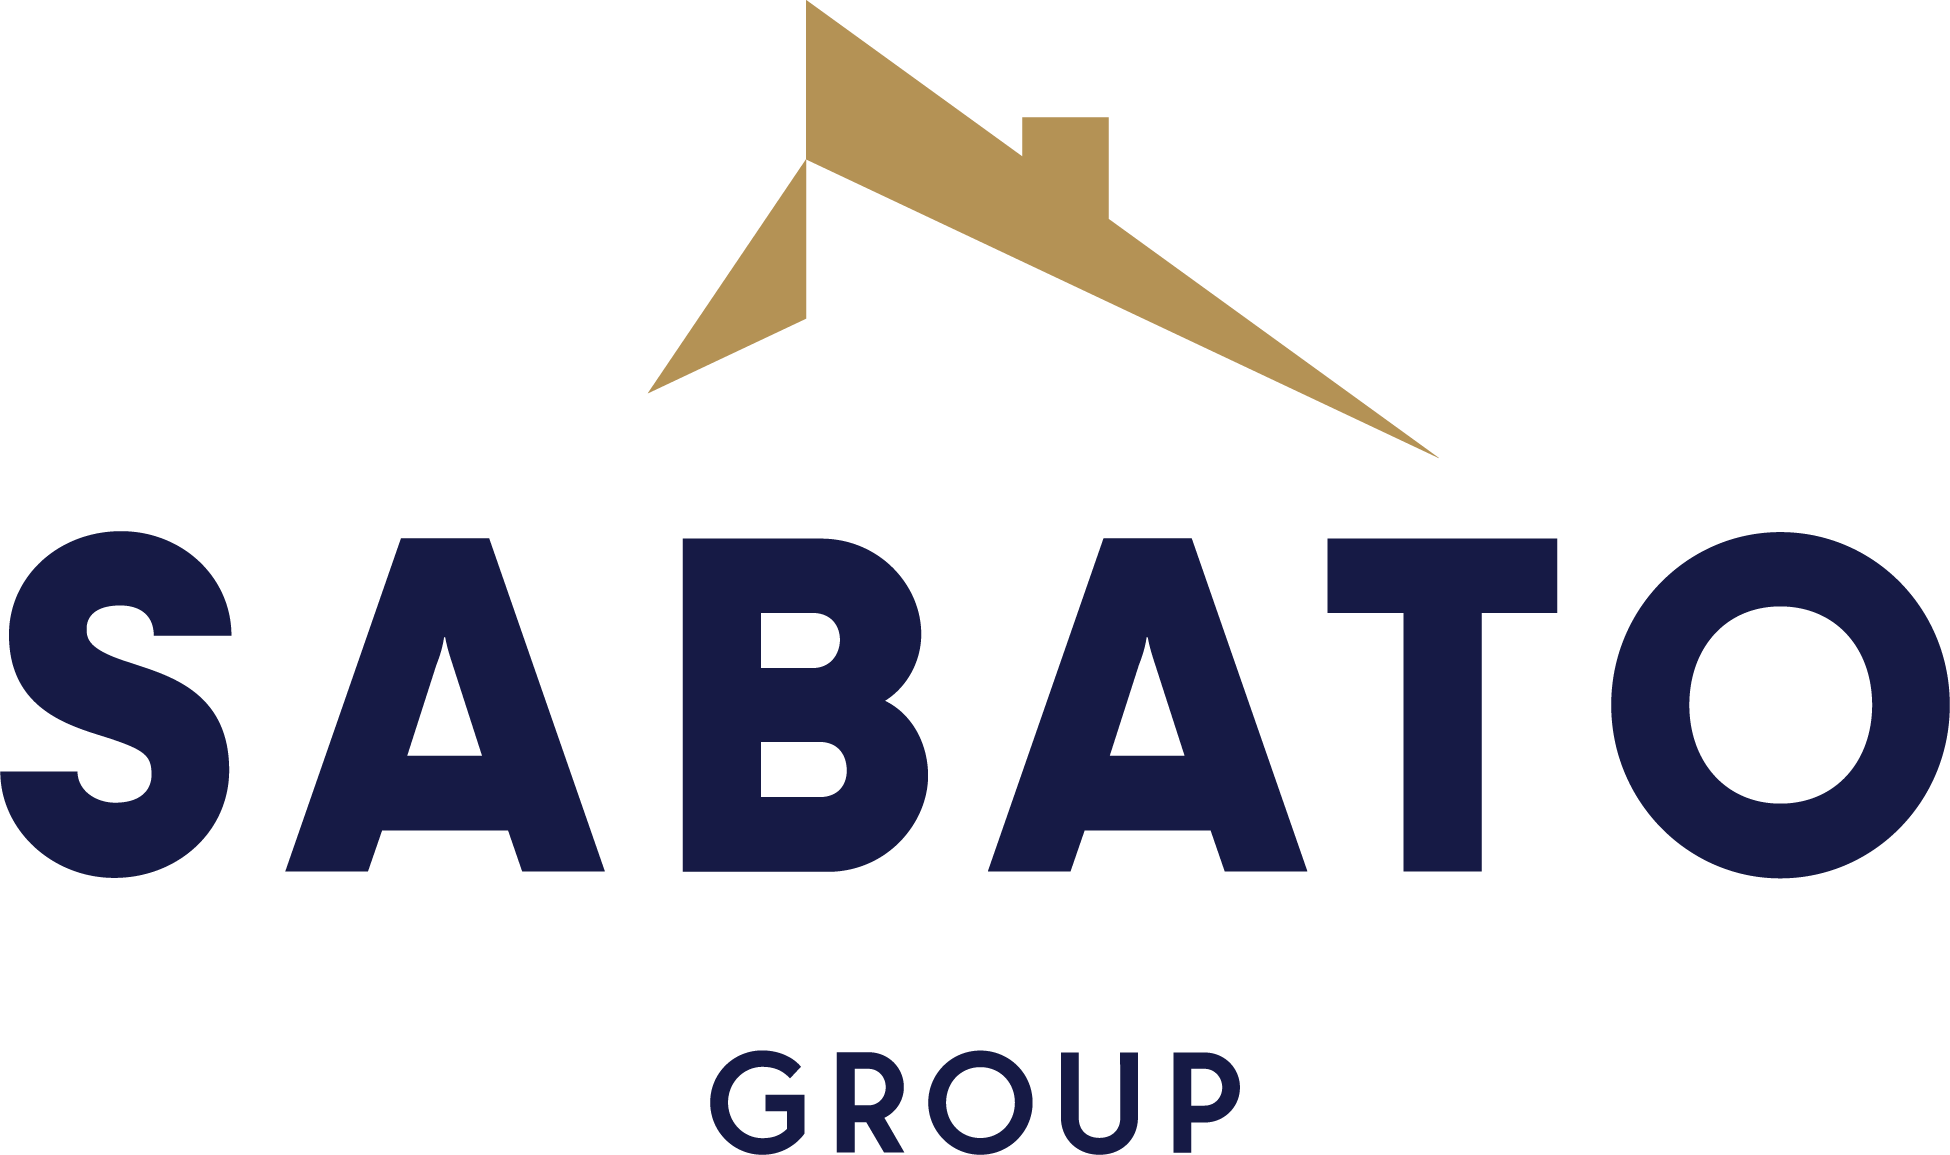 The Sabato Group logo